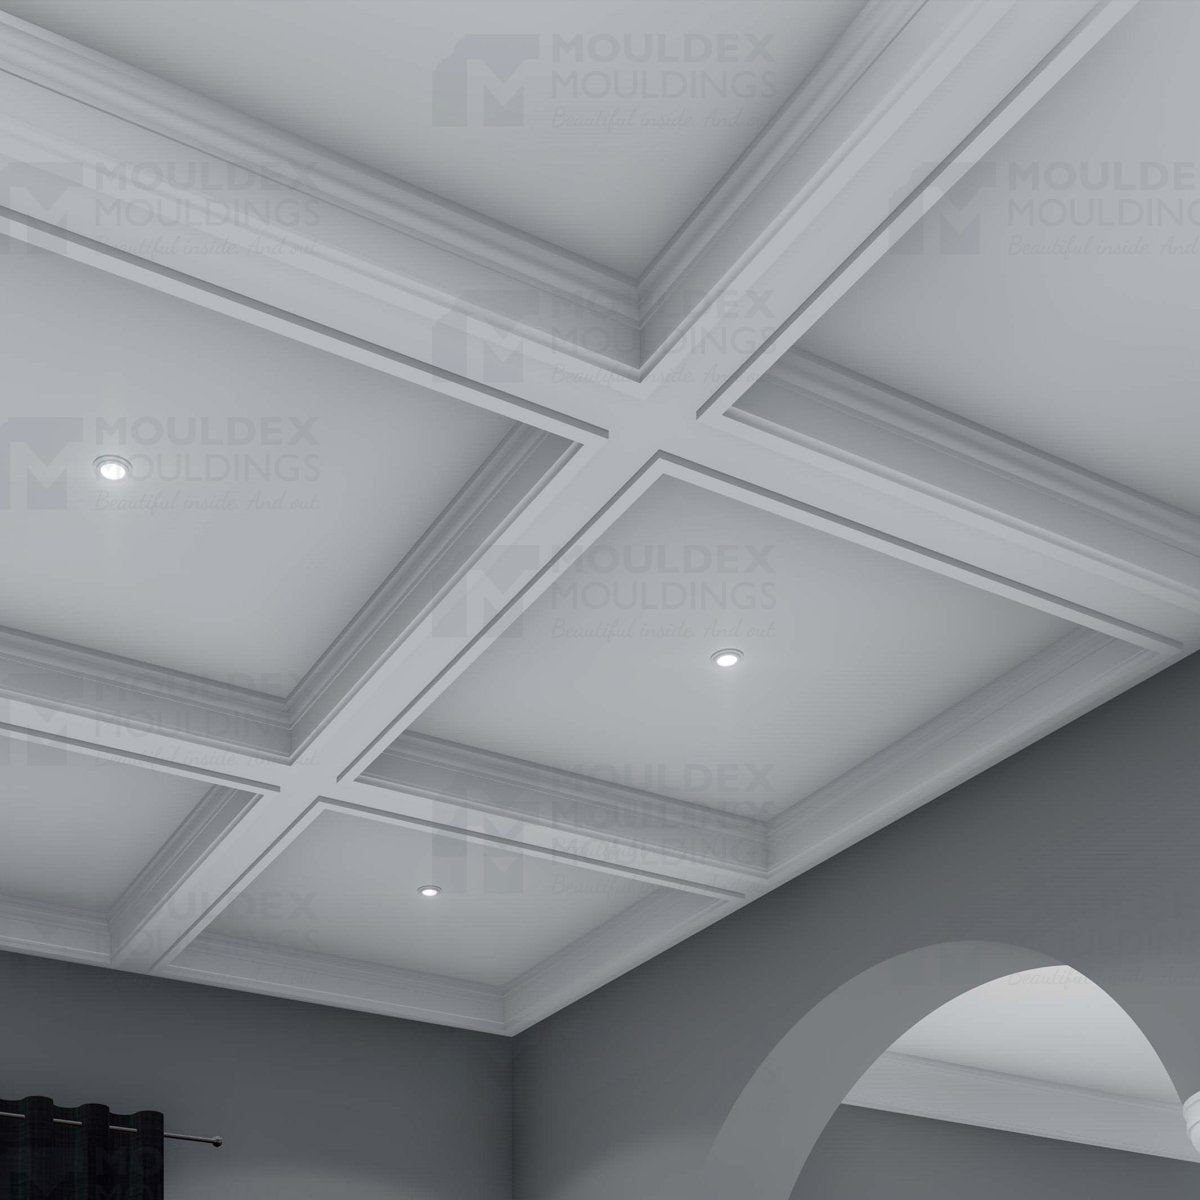 The Cambria Interior Plaster Ceiling